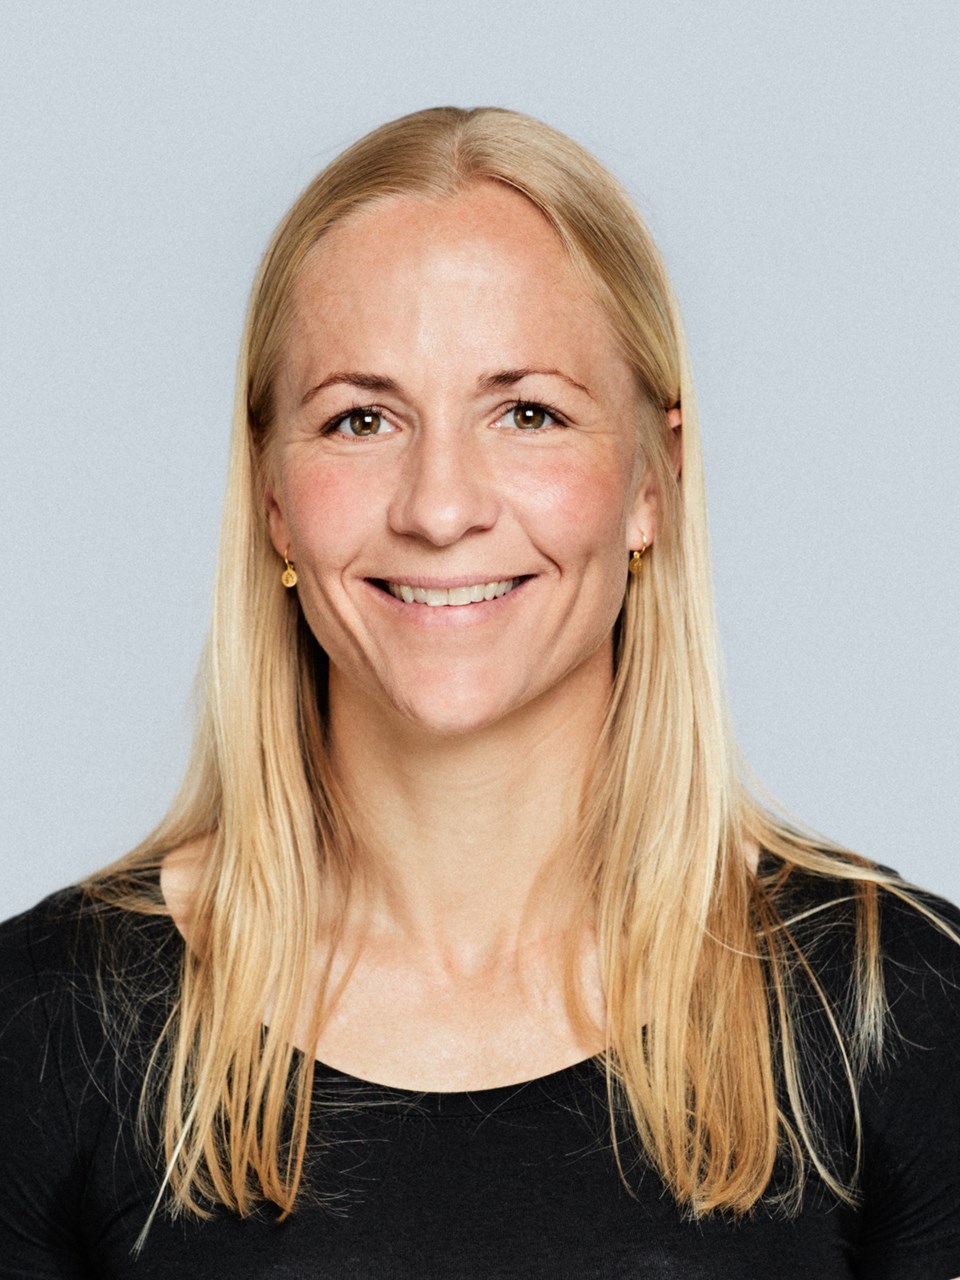 Anne Marie Geisler Andersen